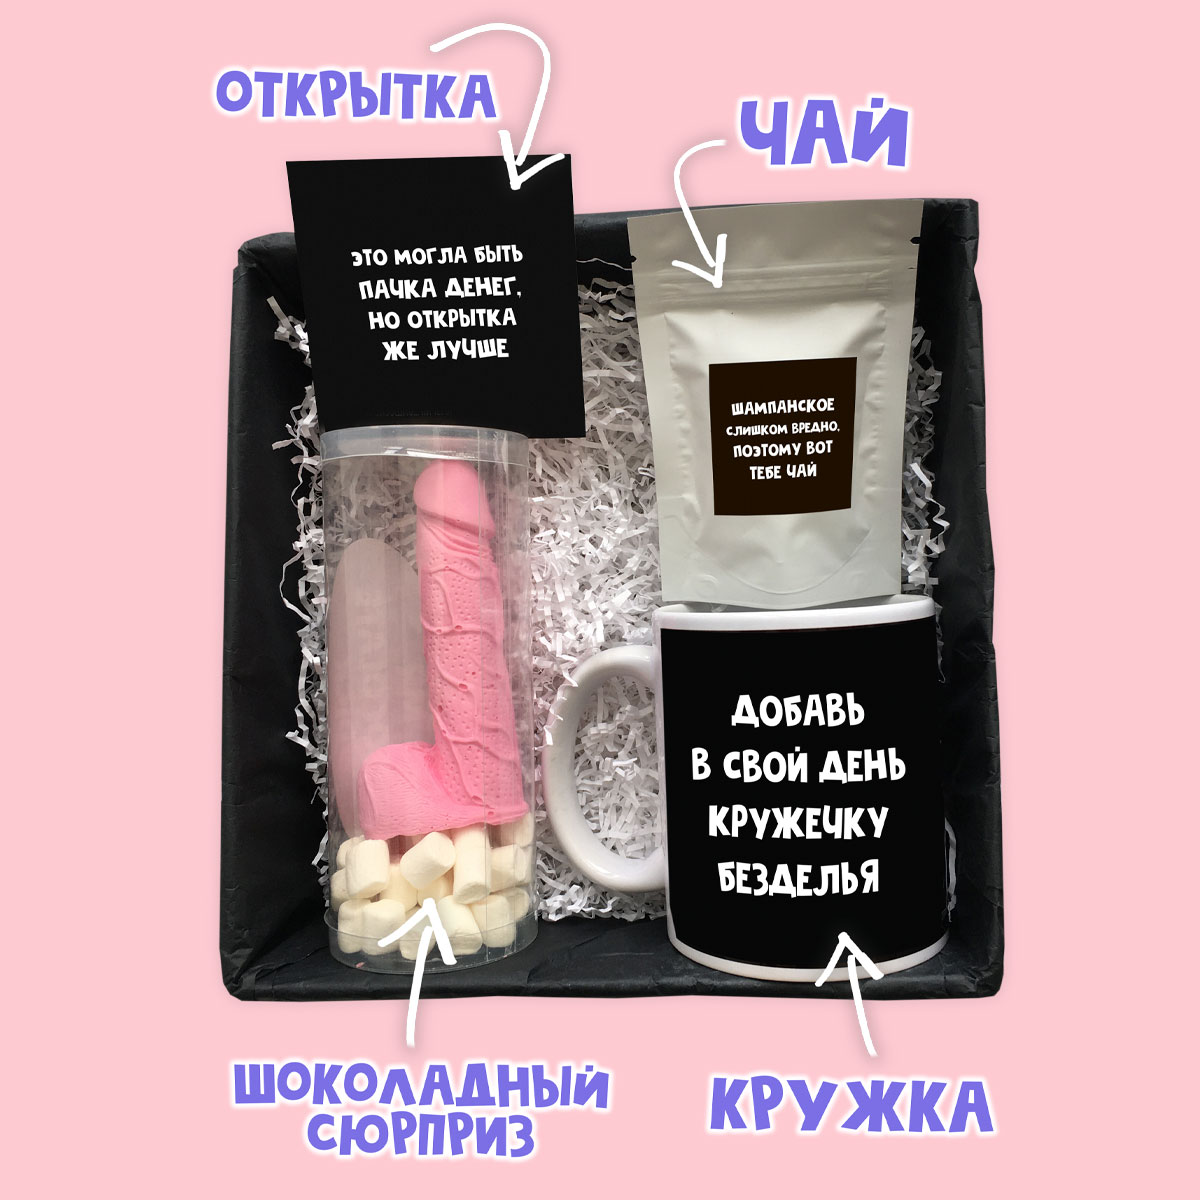 картинка Подарочный набор с юмором "ЛУЧШИЙ ПОДАРОК" от магазина Dreambox